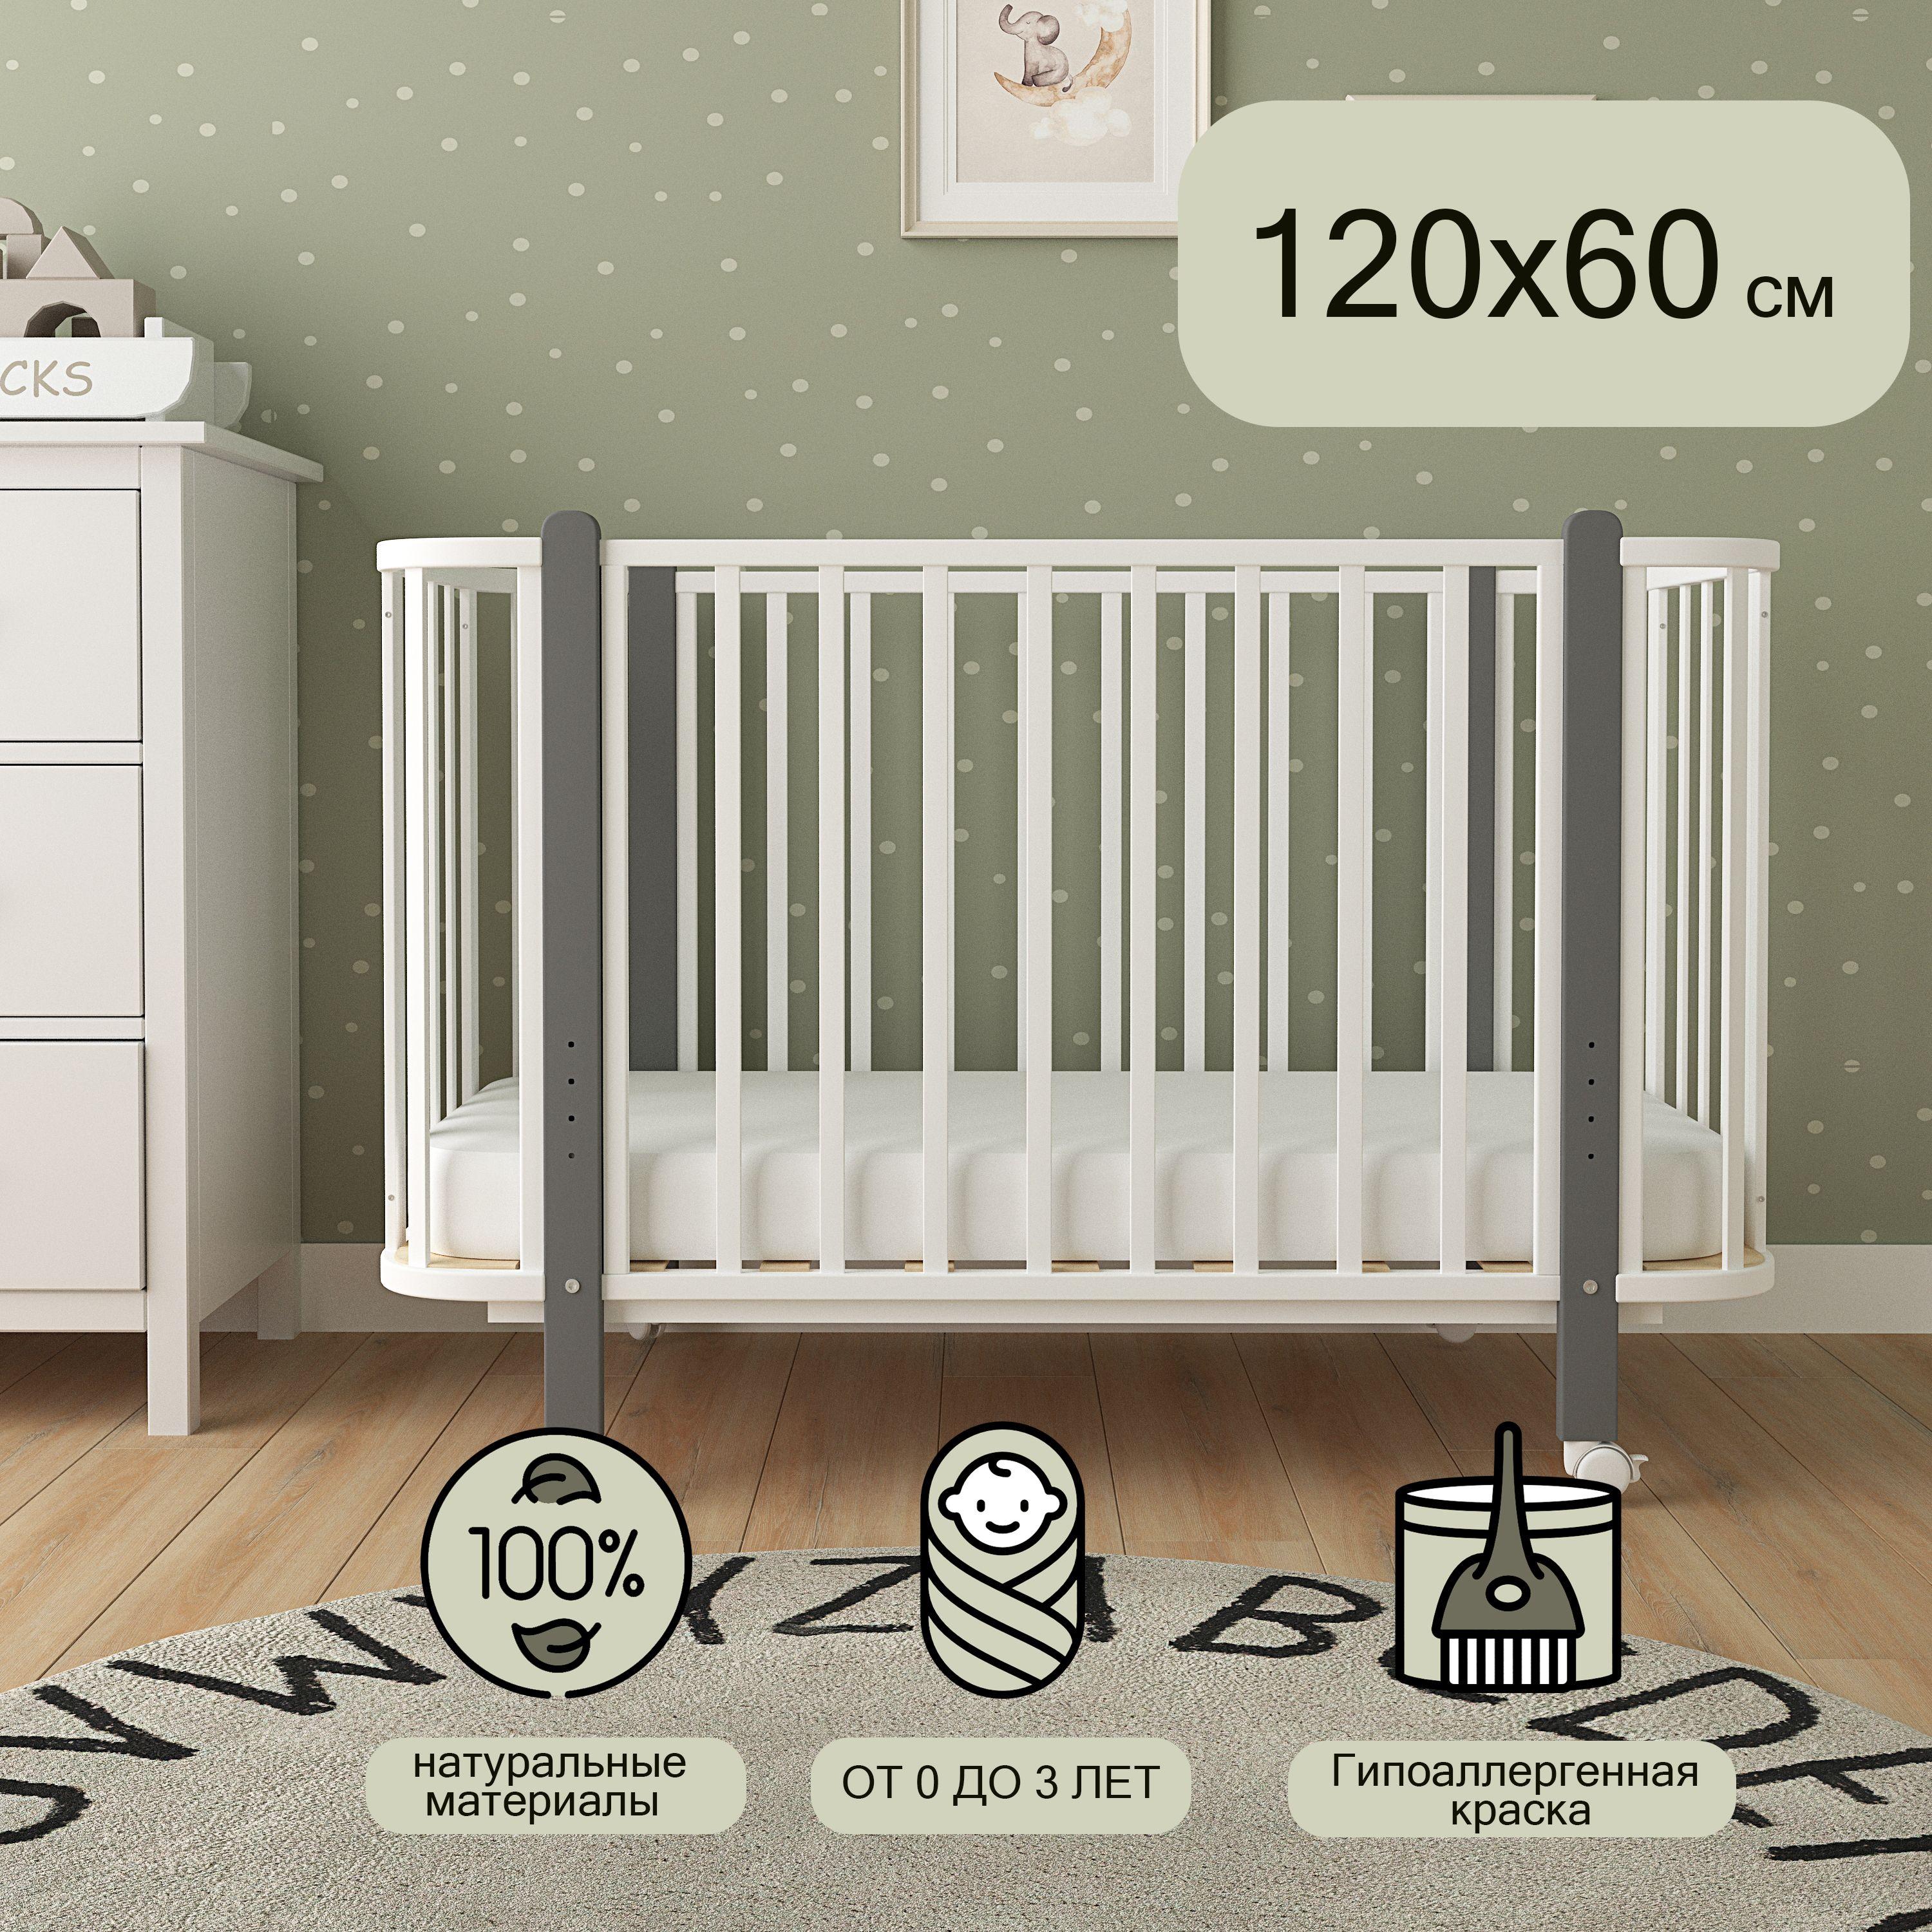 ОПТИПРОМ-А | Детская кроватка для новорожденного, Мультик, 120х60, Белый/Серый